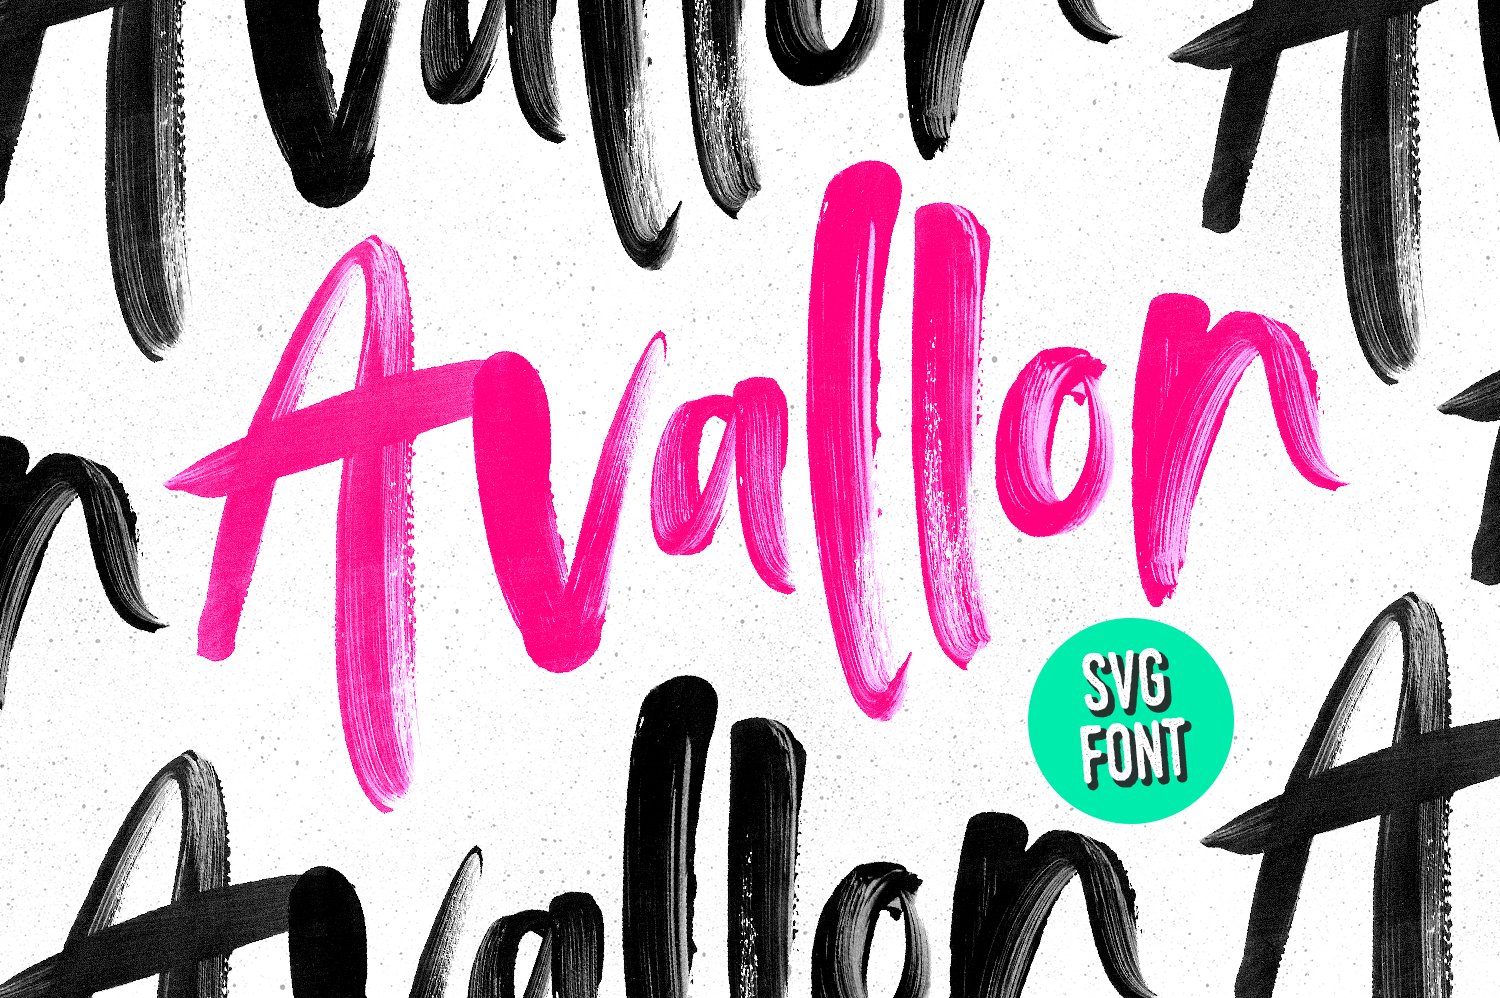 标准 OpenType SVG 字体 Avallon Ope